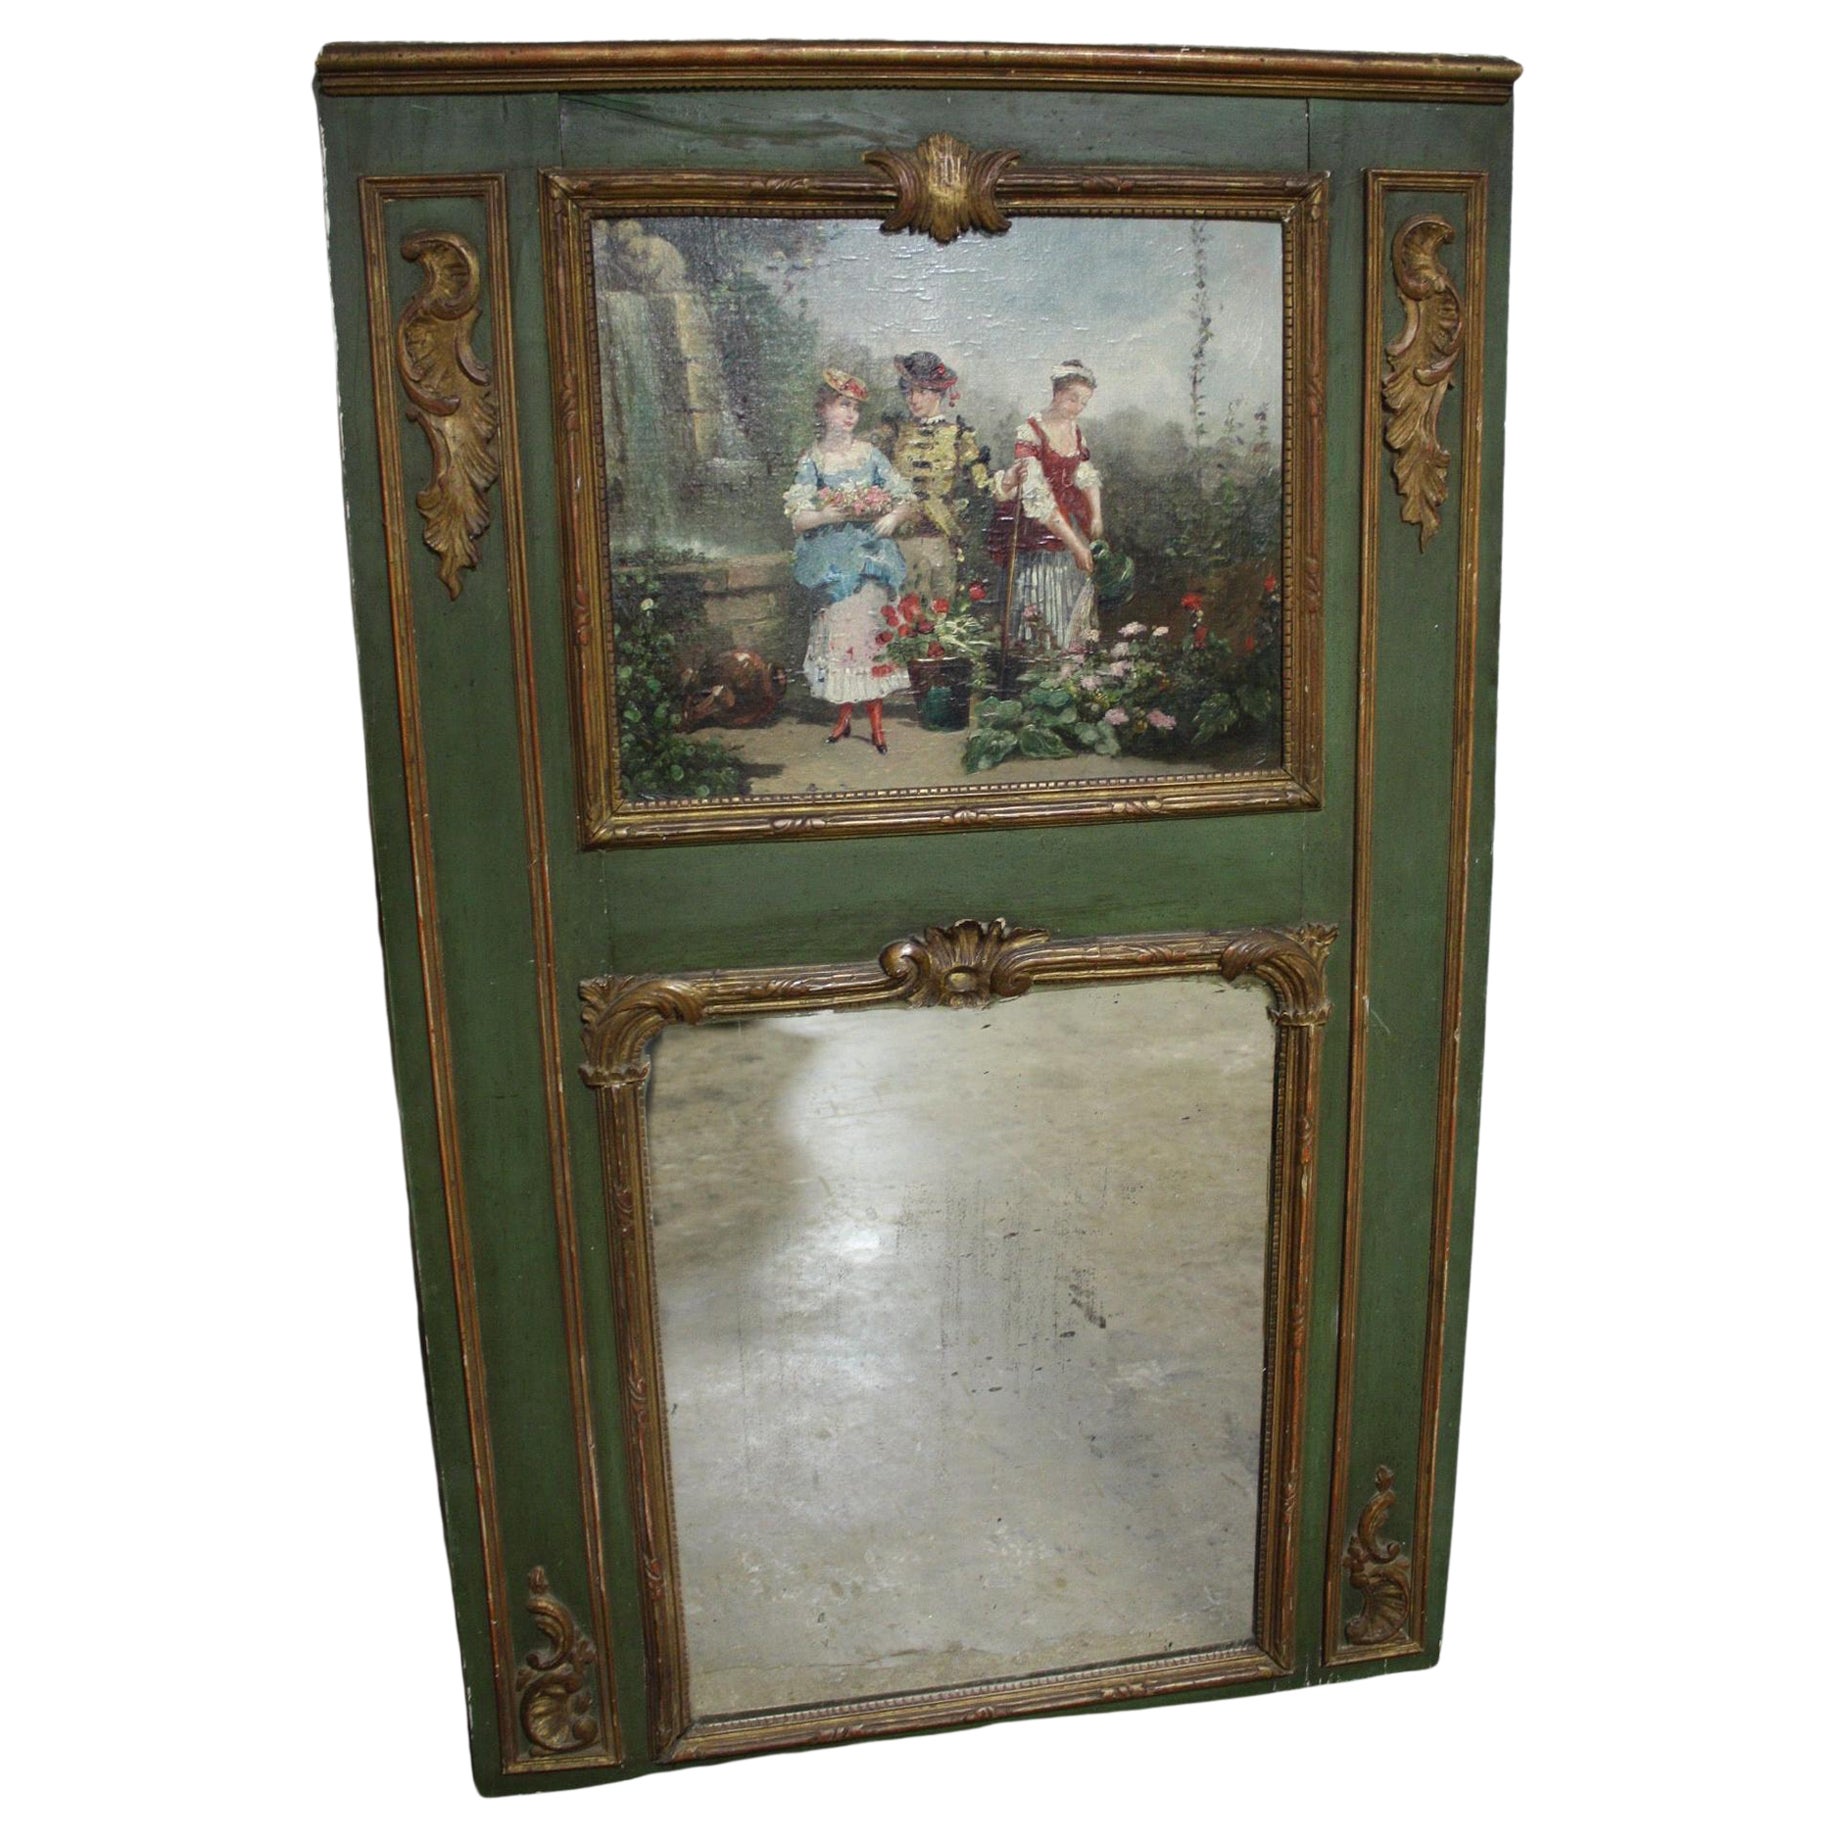 Trumeau-Spiegel aus dem frühen 18. Jahrhundert aus der Zeit Ludwigs XV.